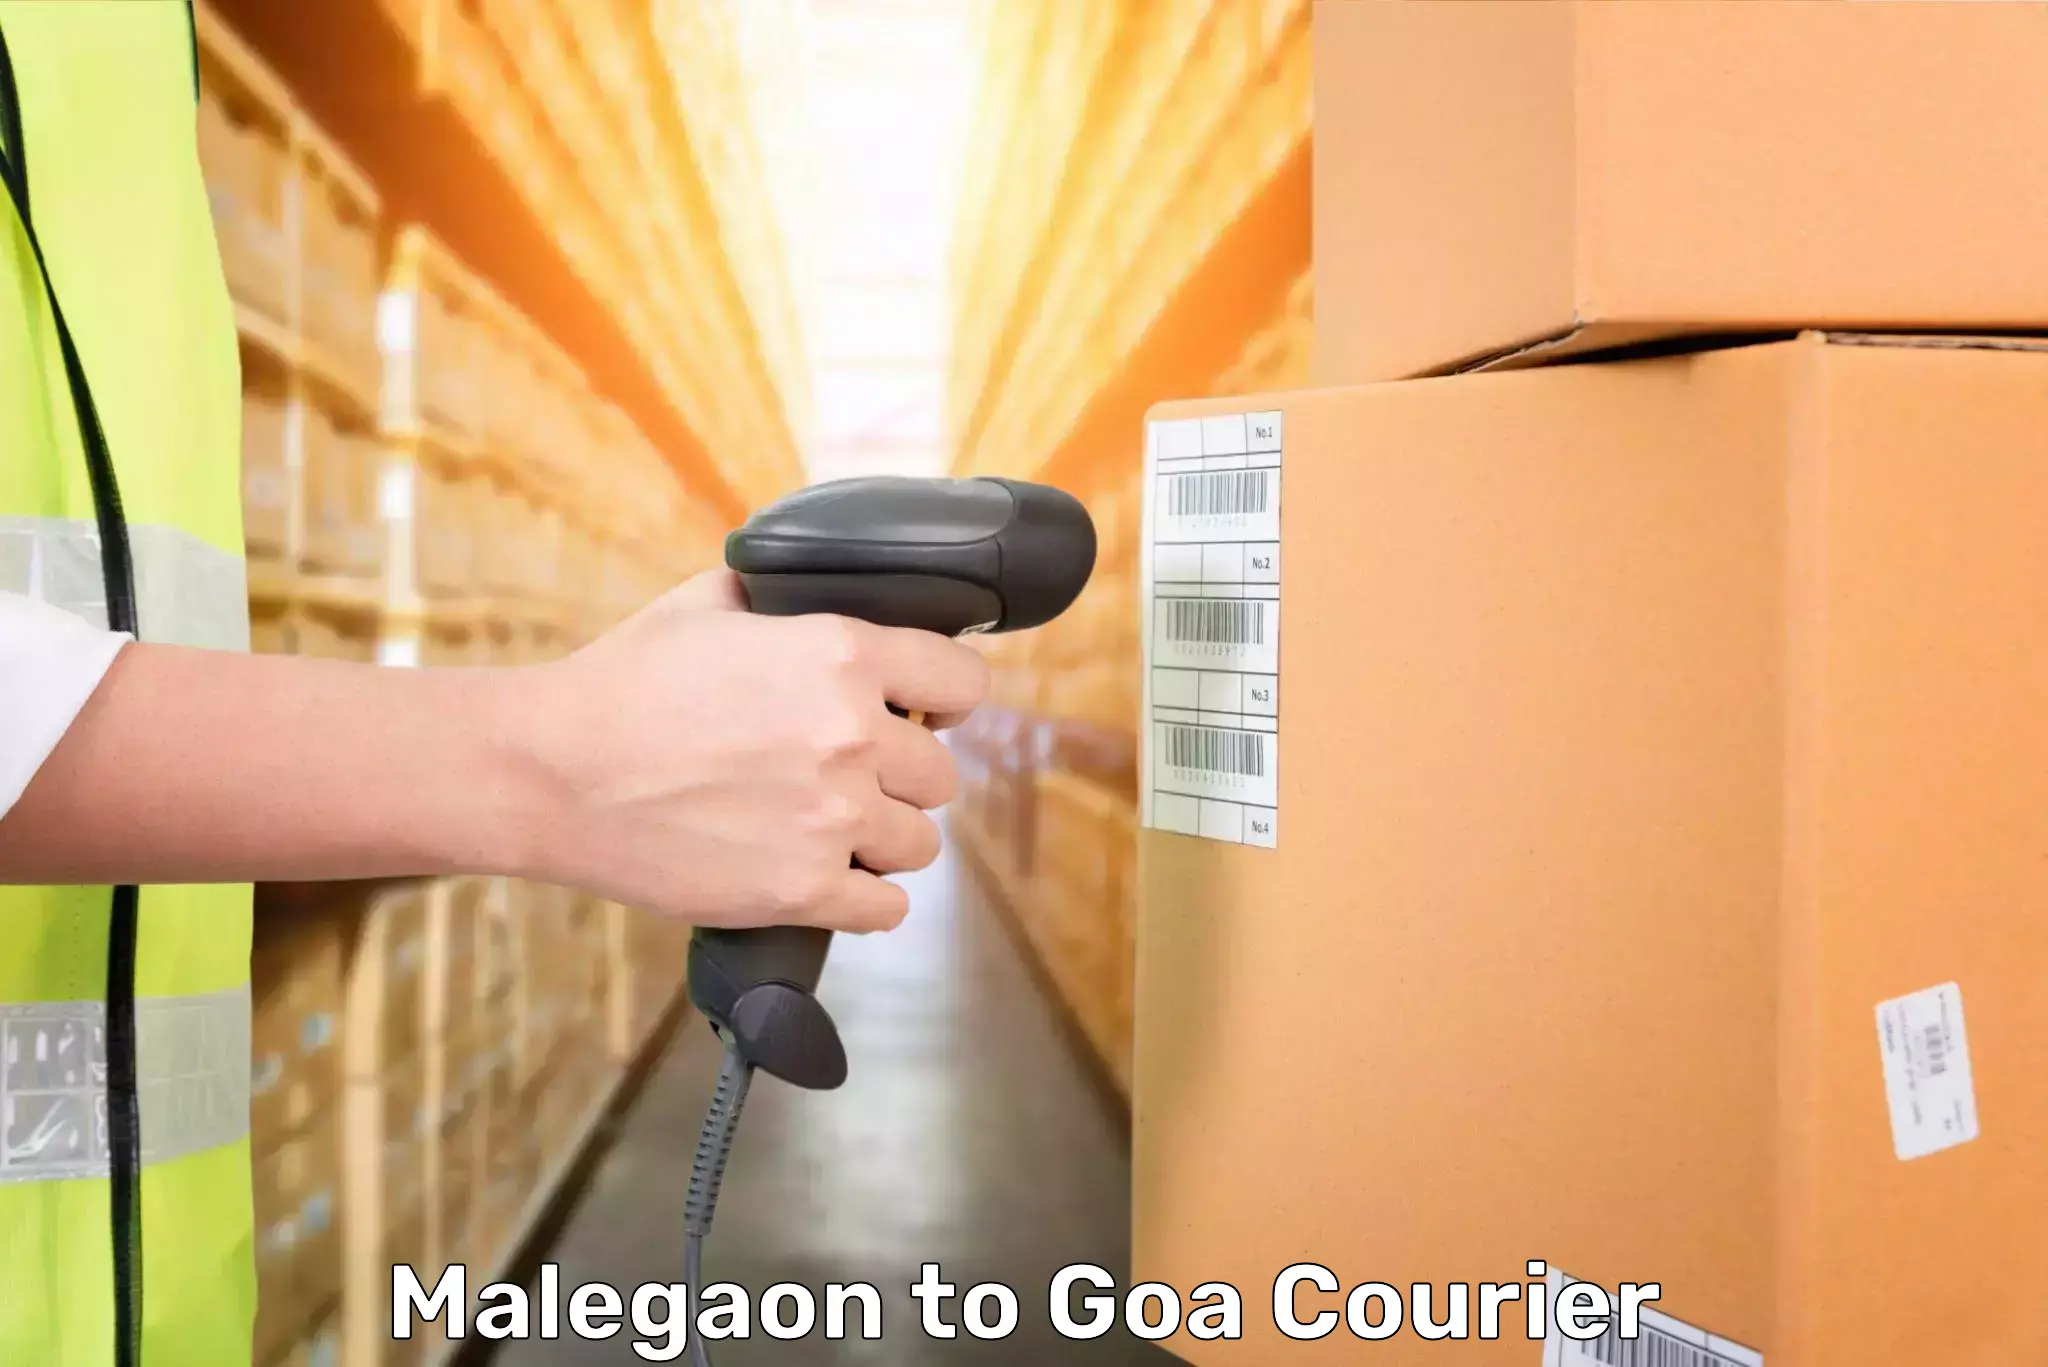 Door-to-door baggage service Malegaon to Ponda